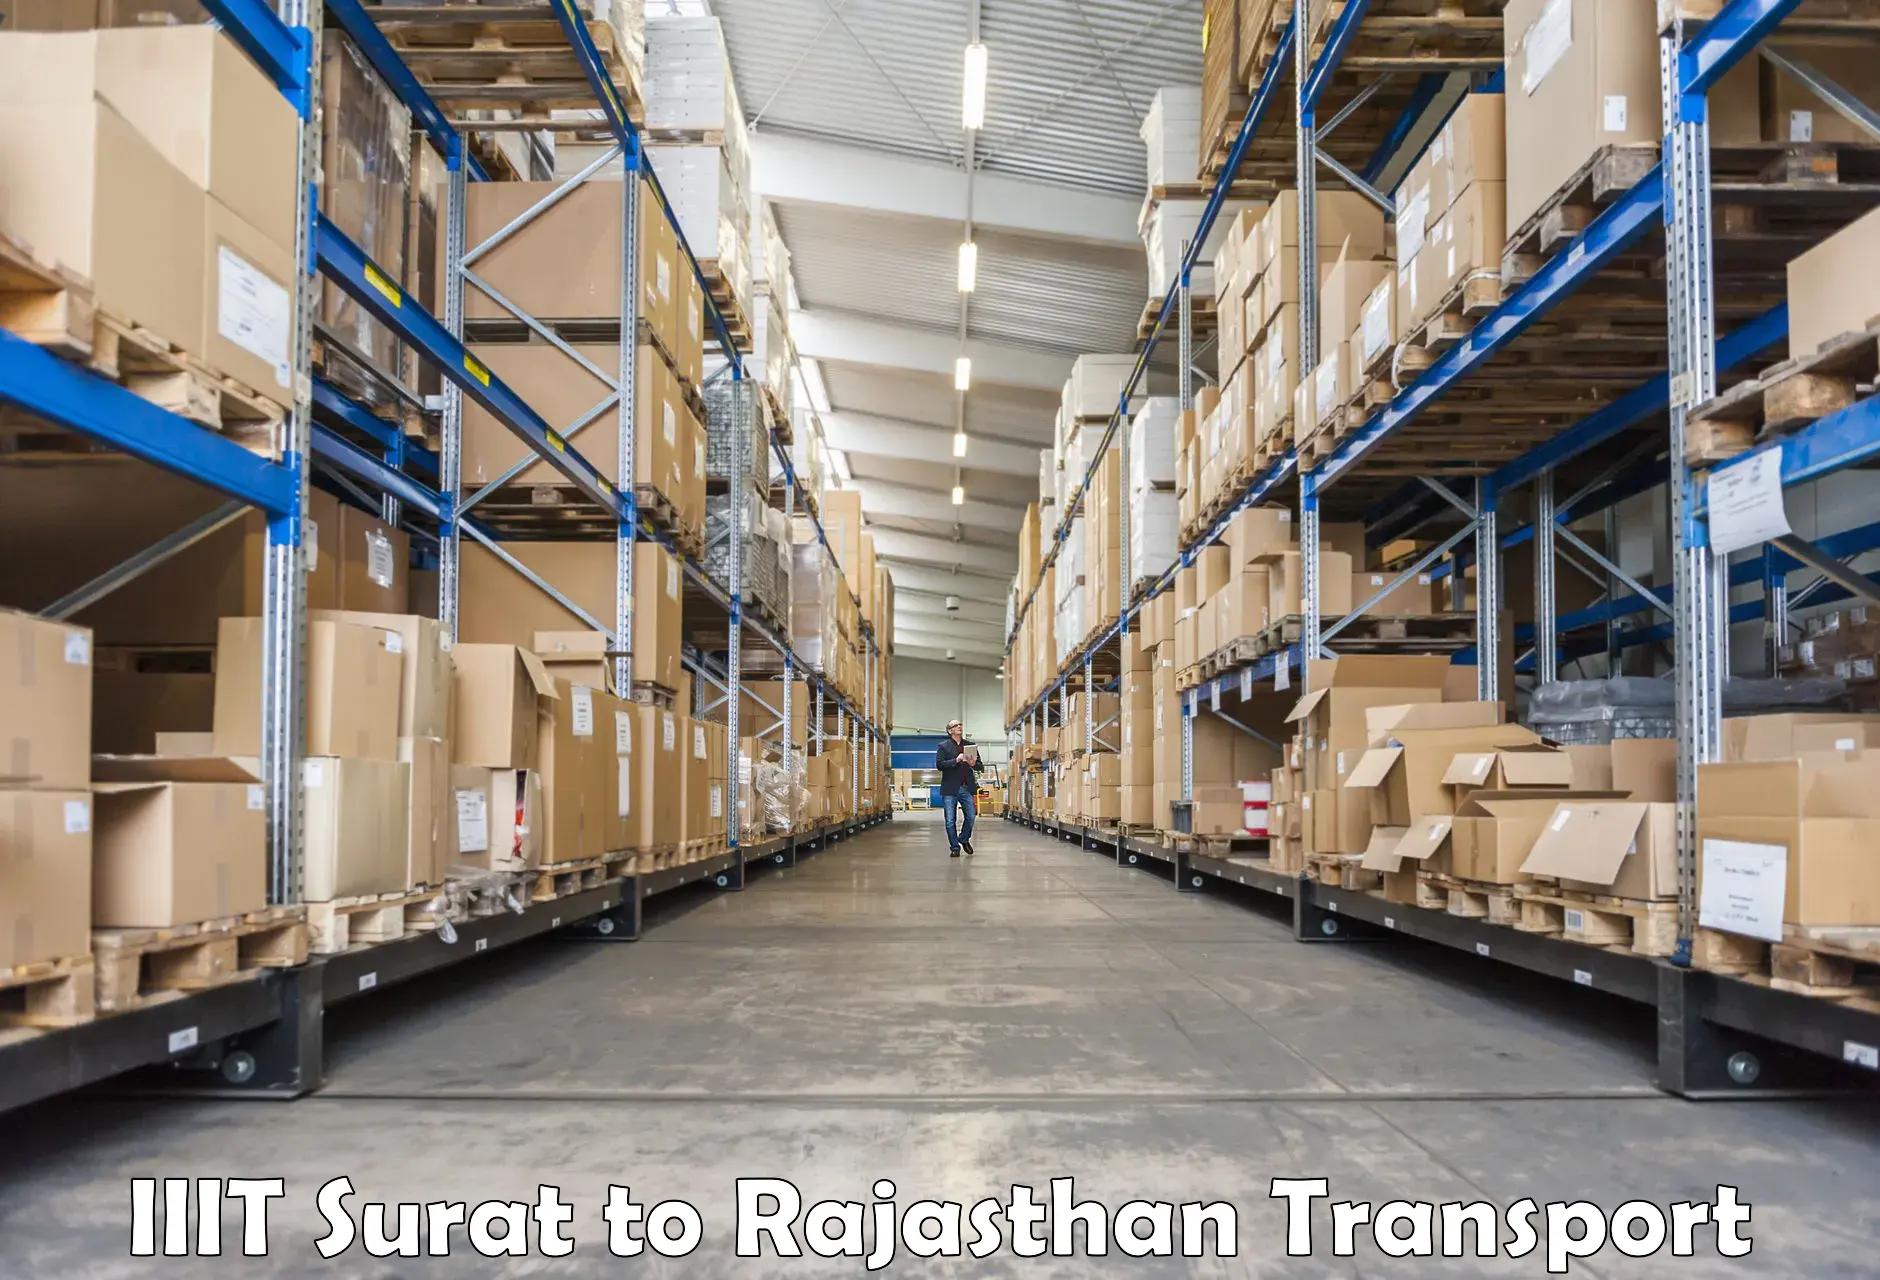 Road transport online services in IIIT Surat to Kumbhalgarh